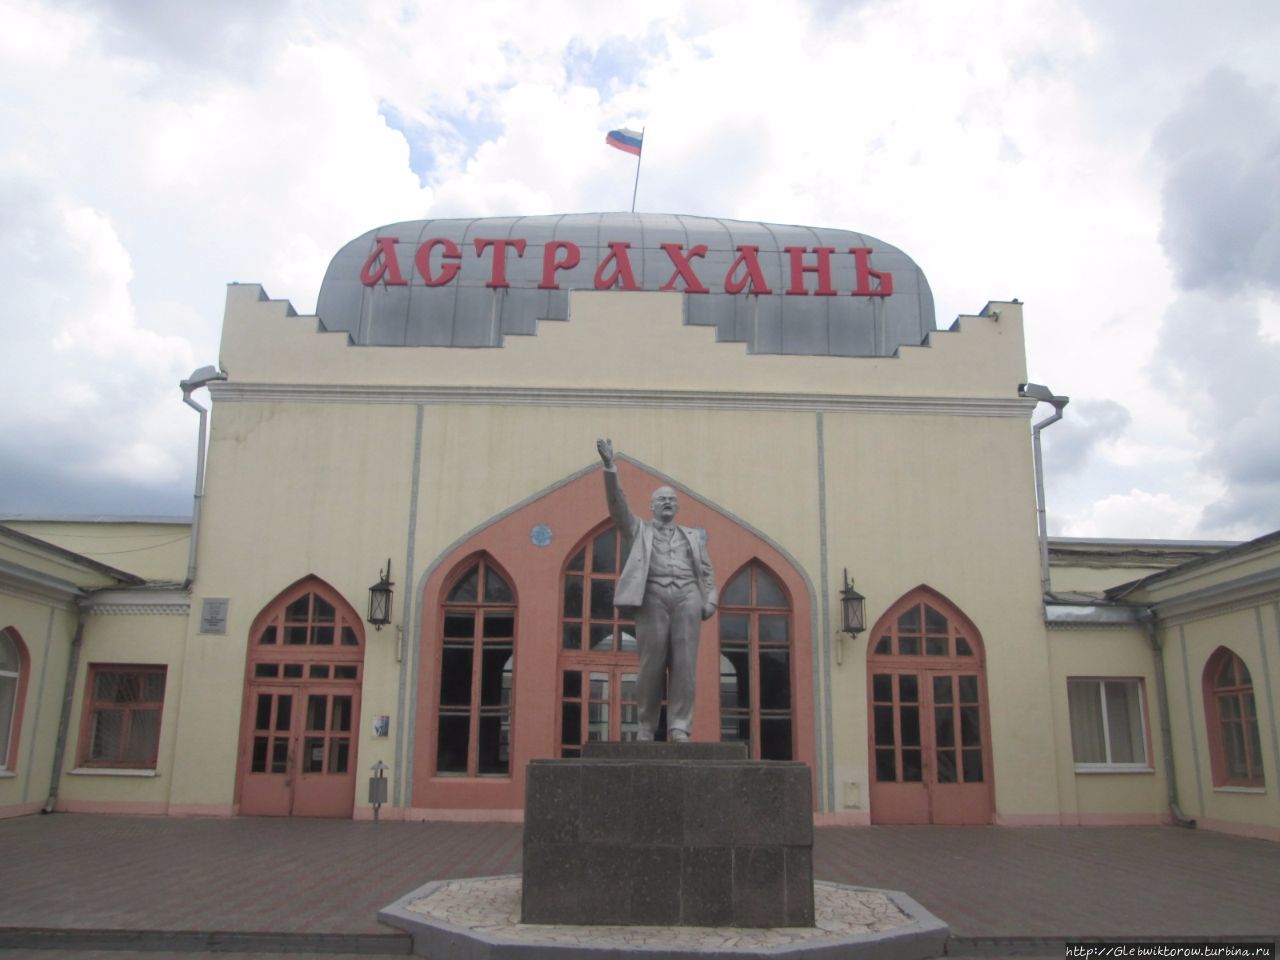 Астрахань вокзал телефон. Старый вокзал Астрахань. Железнодорожный вокзал Астрахань. Астраханский ЖД вокзал. Старое здание вокзала в Астрахани.